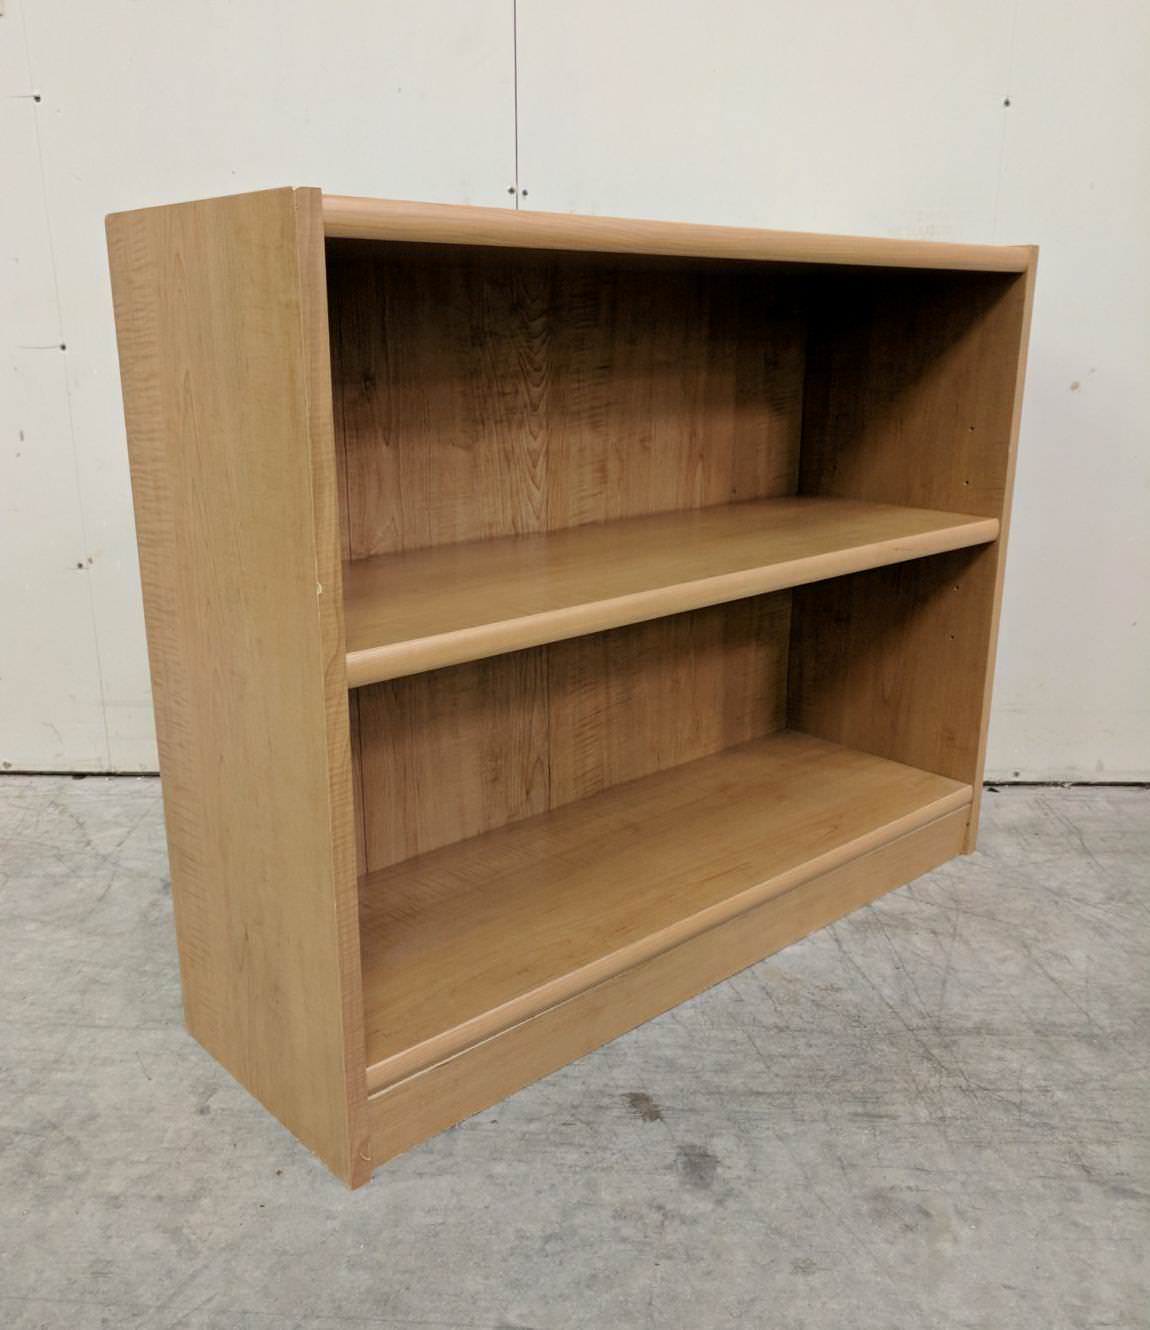 Oak Laminate Bookshelf – 37 Inch Wide